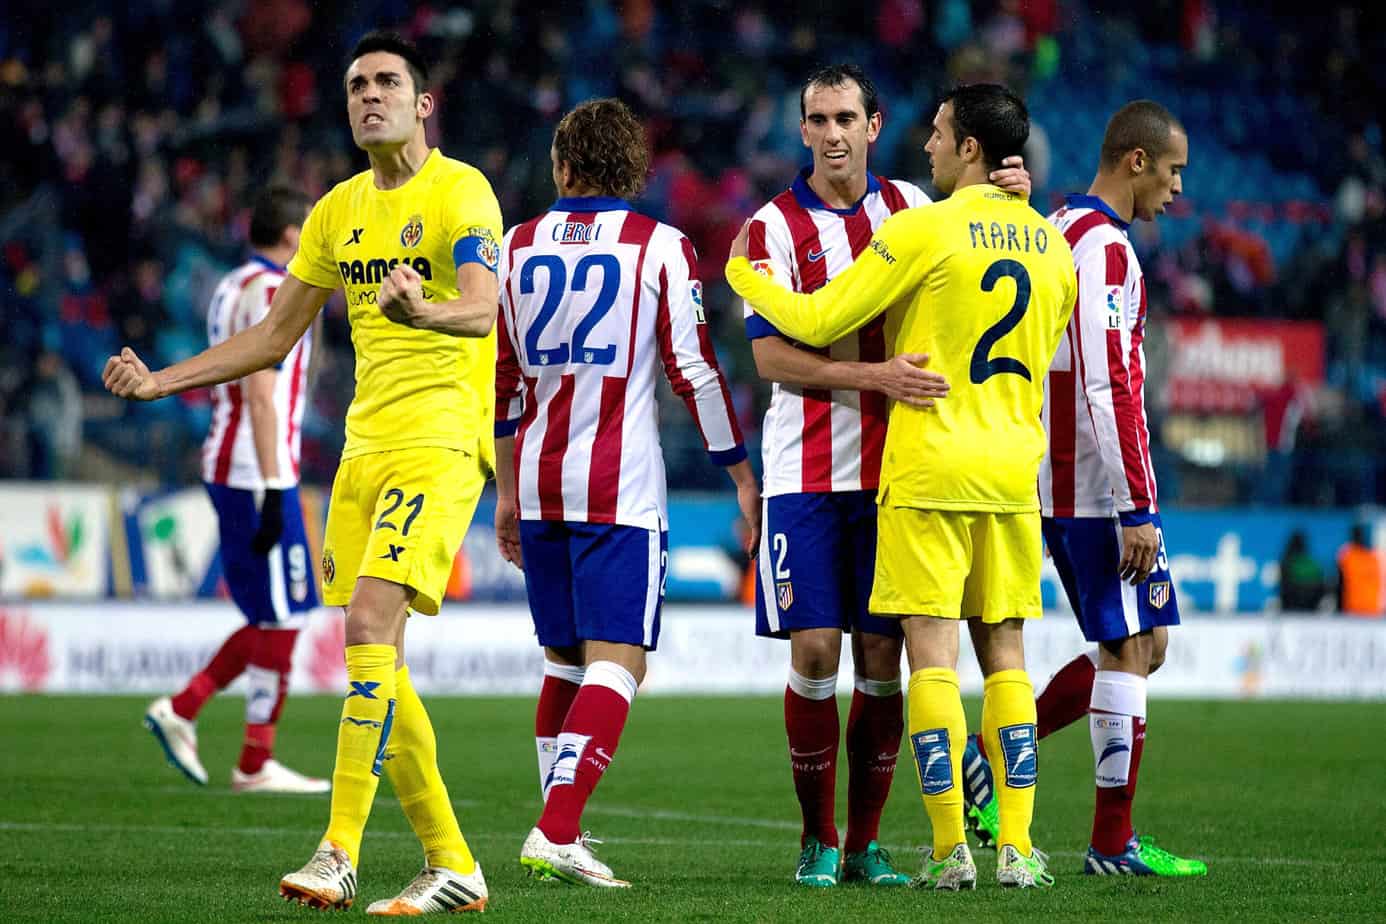 Villarreal vs. Atlético de Madrid Preview and Free Pick